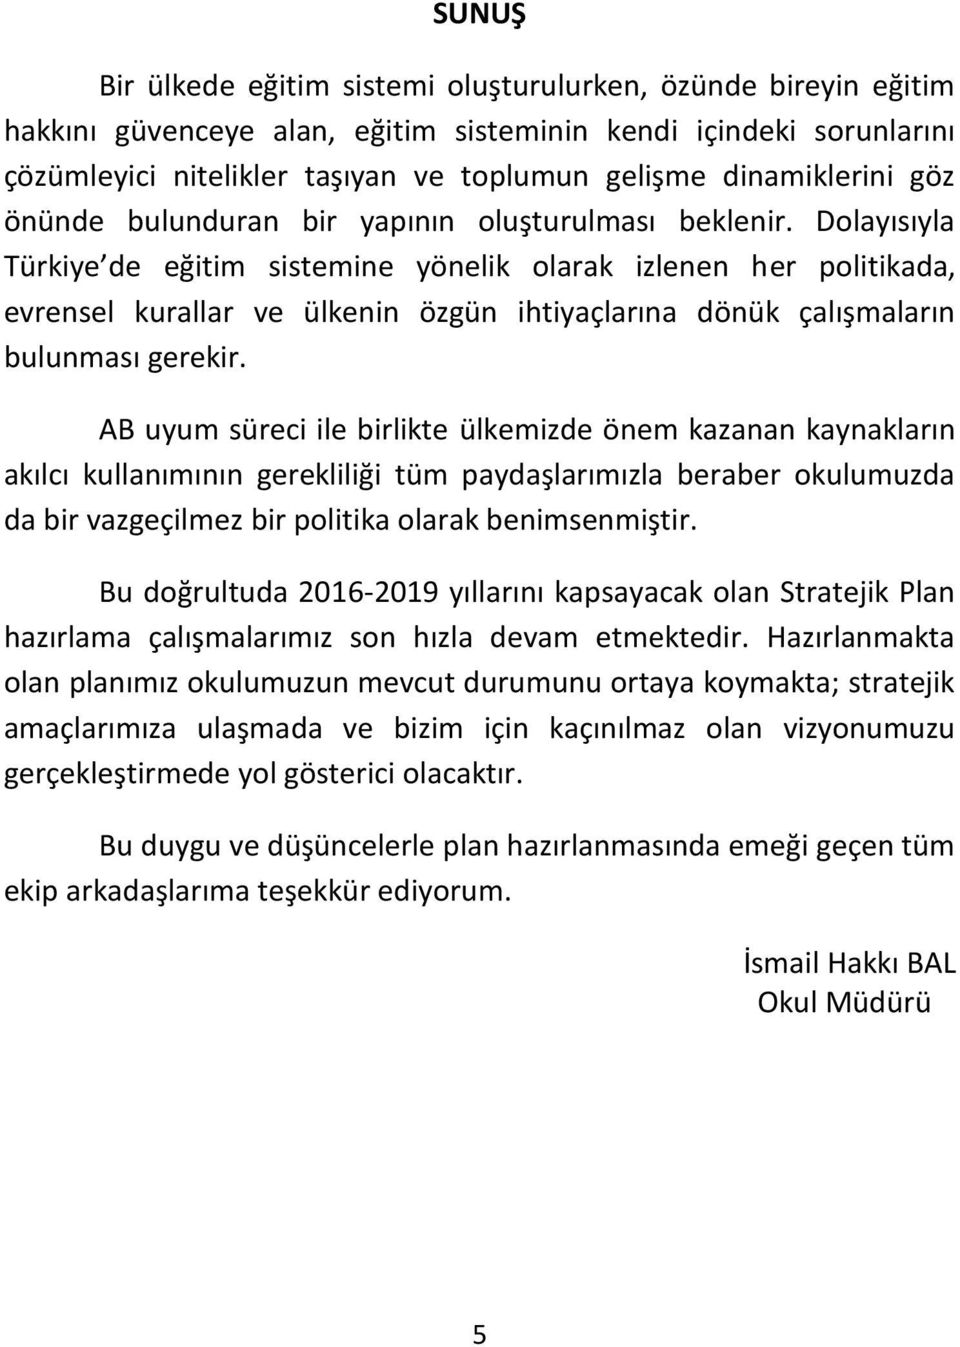 Dolayısıyla Türkiye de eğitim sistemine yönelik olarak izlenen her politikada, evrensel kurallar ve ülkenin özgün ihtiyaçlarına dönük çalışmaların bulunması gerekir.